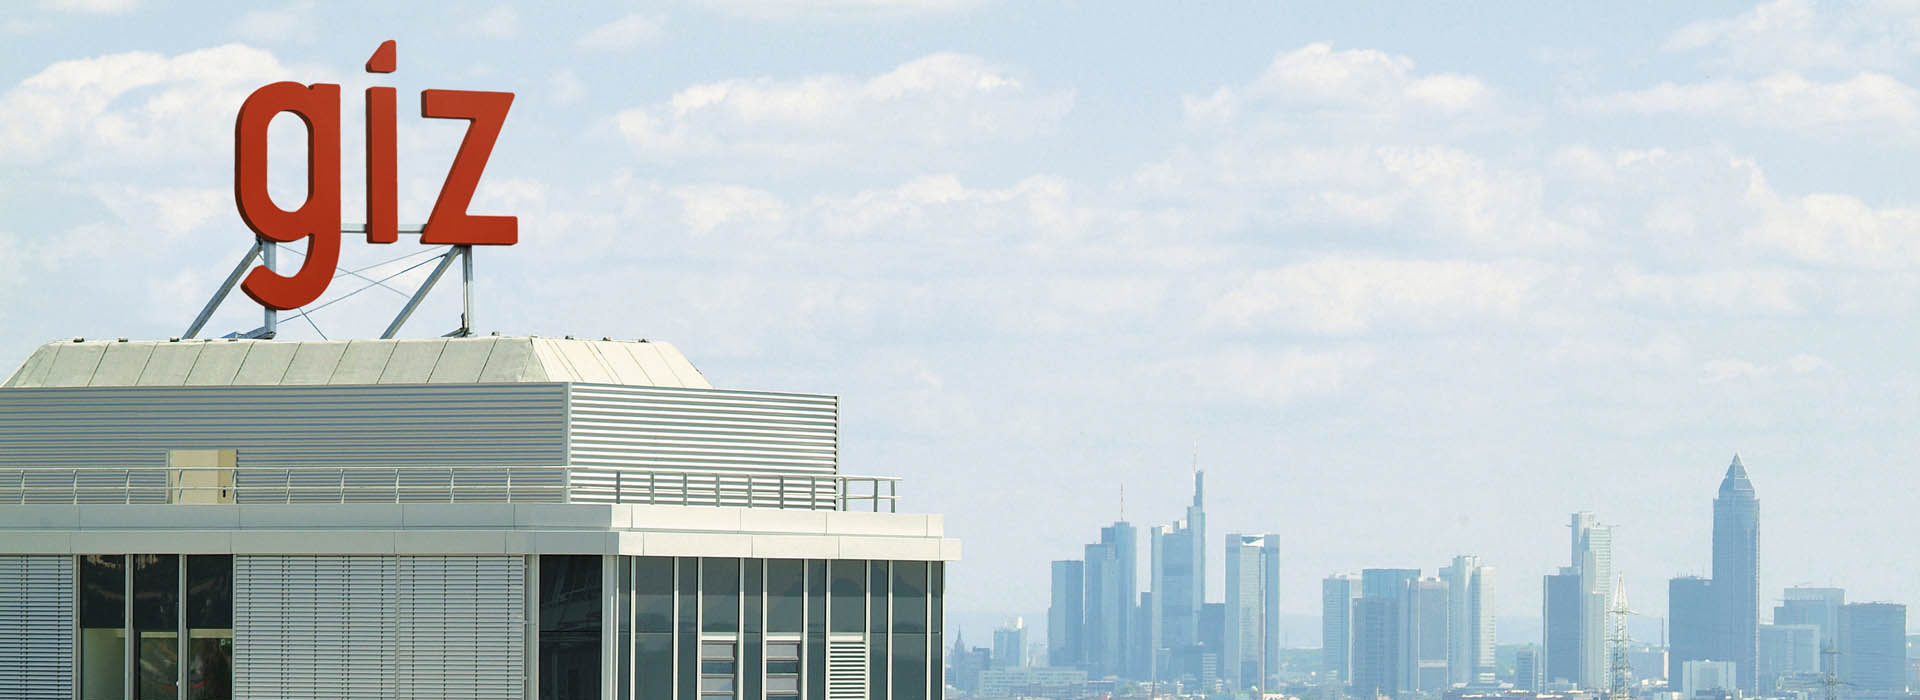 Blick auf die Frankfurter Skyline mit GIZ in Eschborn im Vordergrund